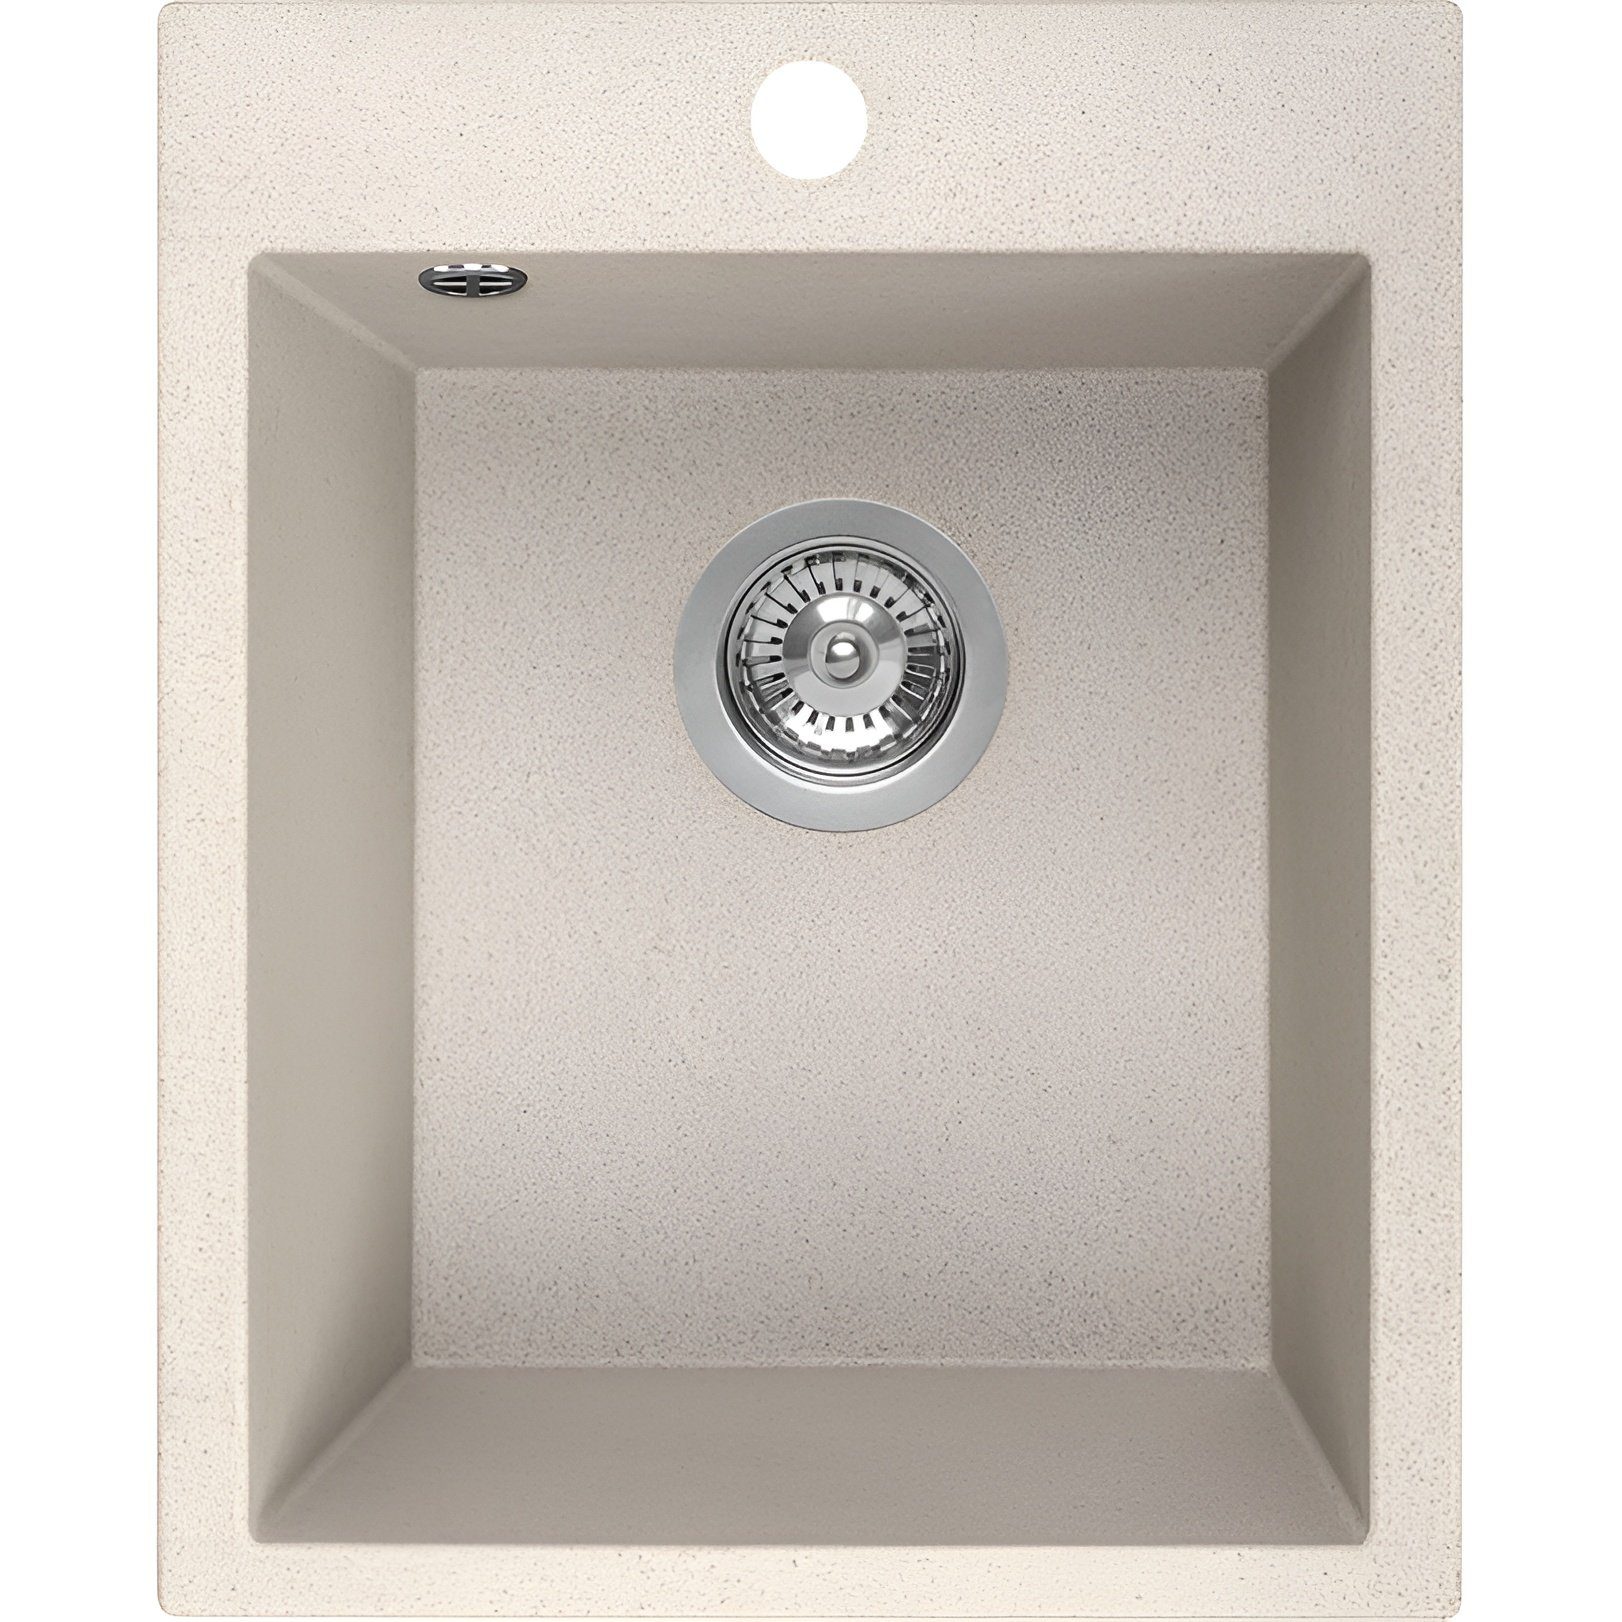 KOLMAN Küchenspüle Einzelbecken Chichi Granitspüle, Rechteckig, 48/39 cm, Beige, Space Saving Siphon GRATIS